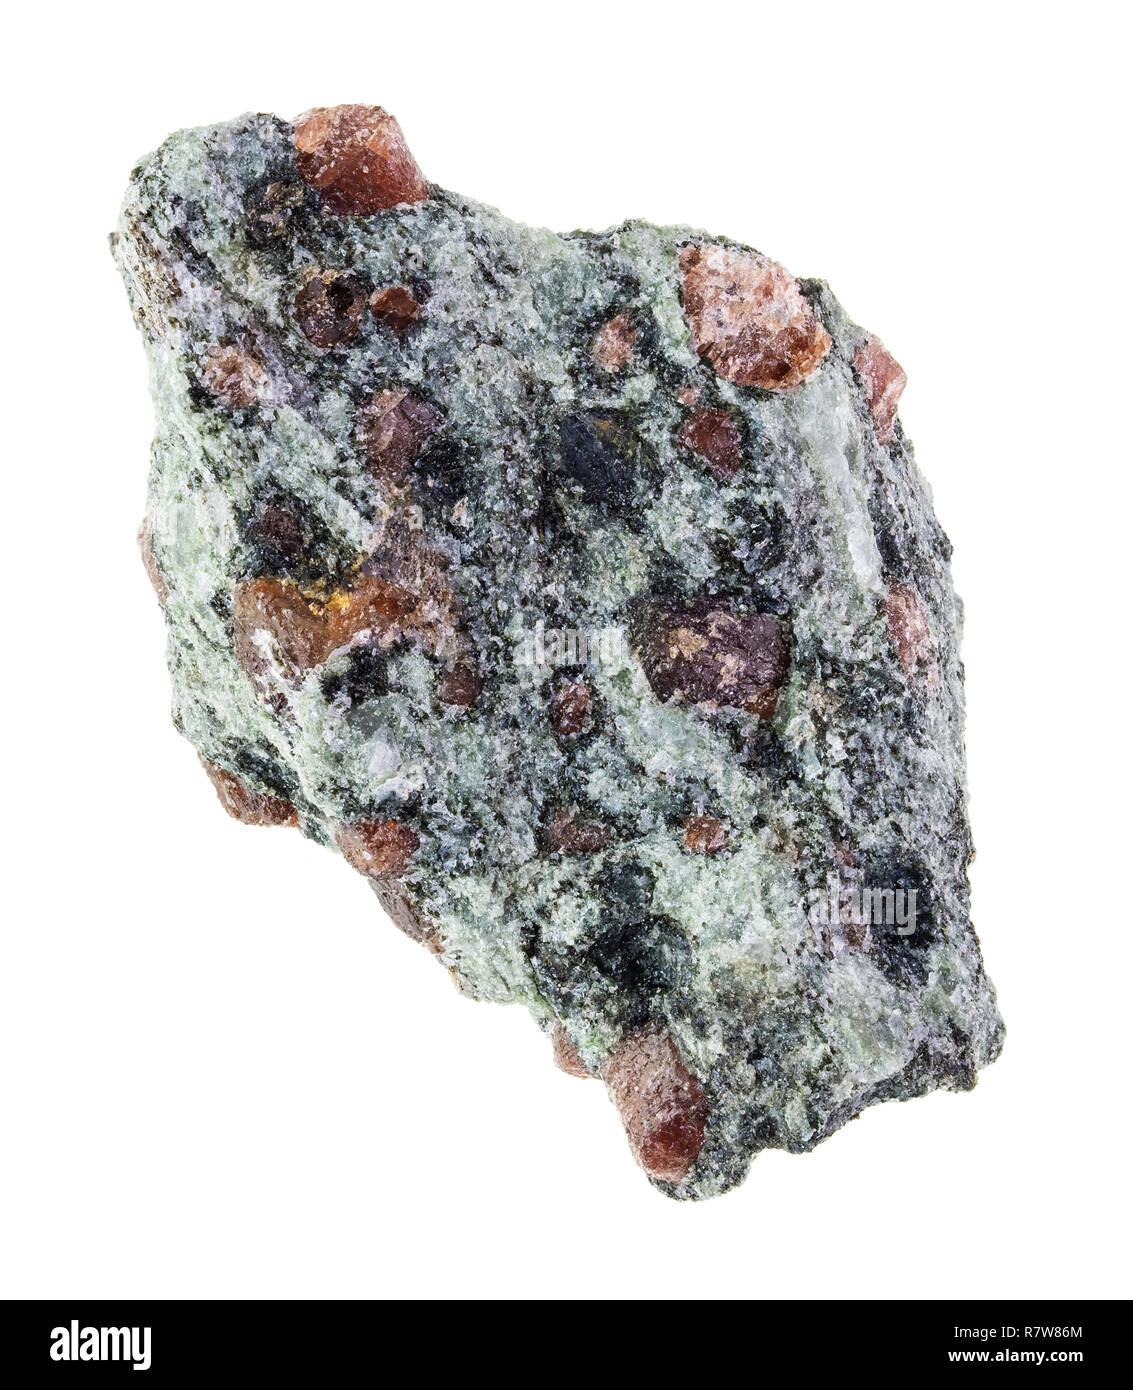 Makrofotografie von natürlichen Mineral aus geologische Sammlung - Grobe eclogite Stein auf weißem Hintergrund Stockfoto